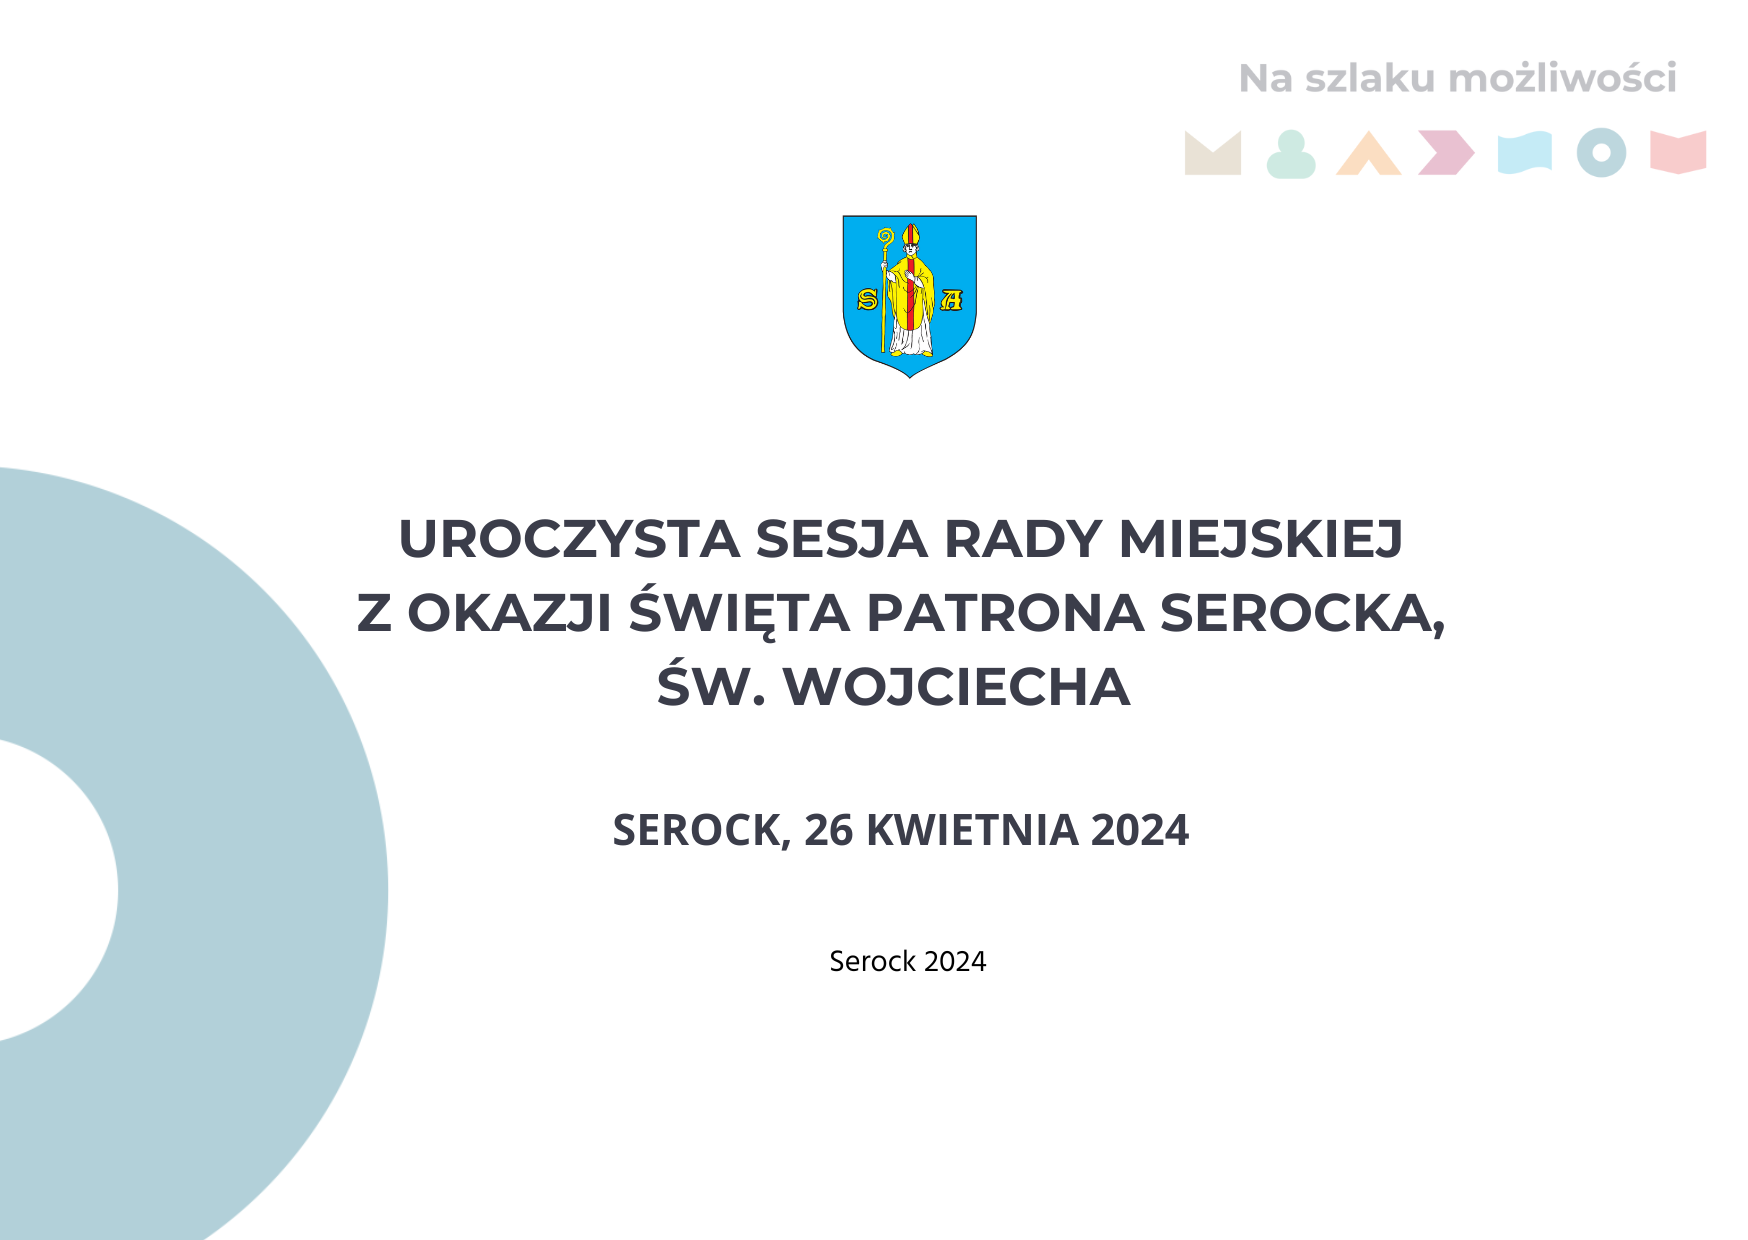 Uroczysta Sesja Rady Miejskiej z okazji świeta patrona Serocka, św. Wojciecha